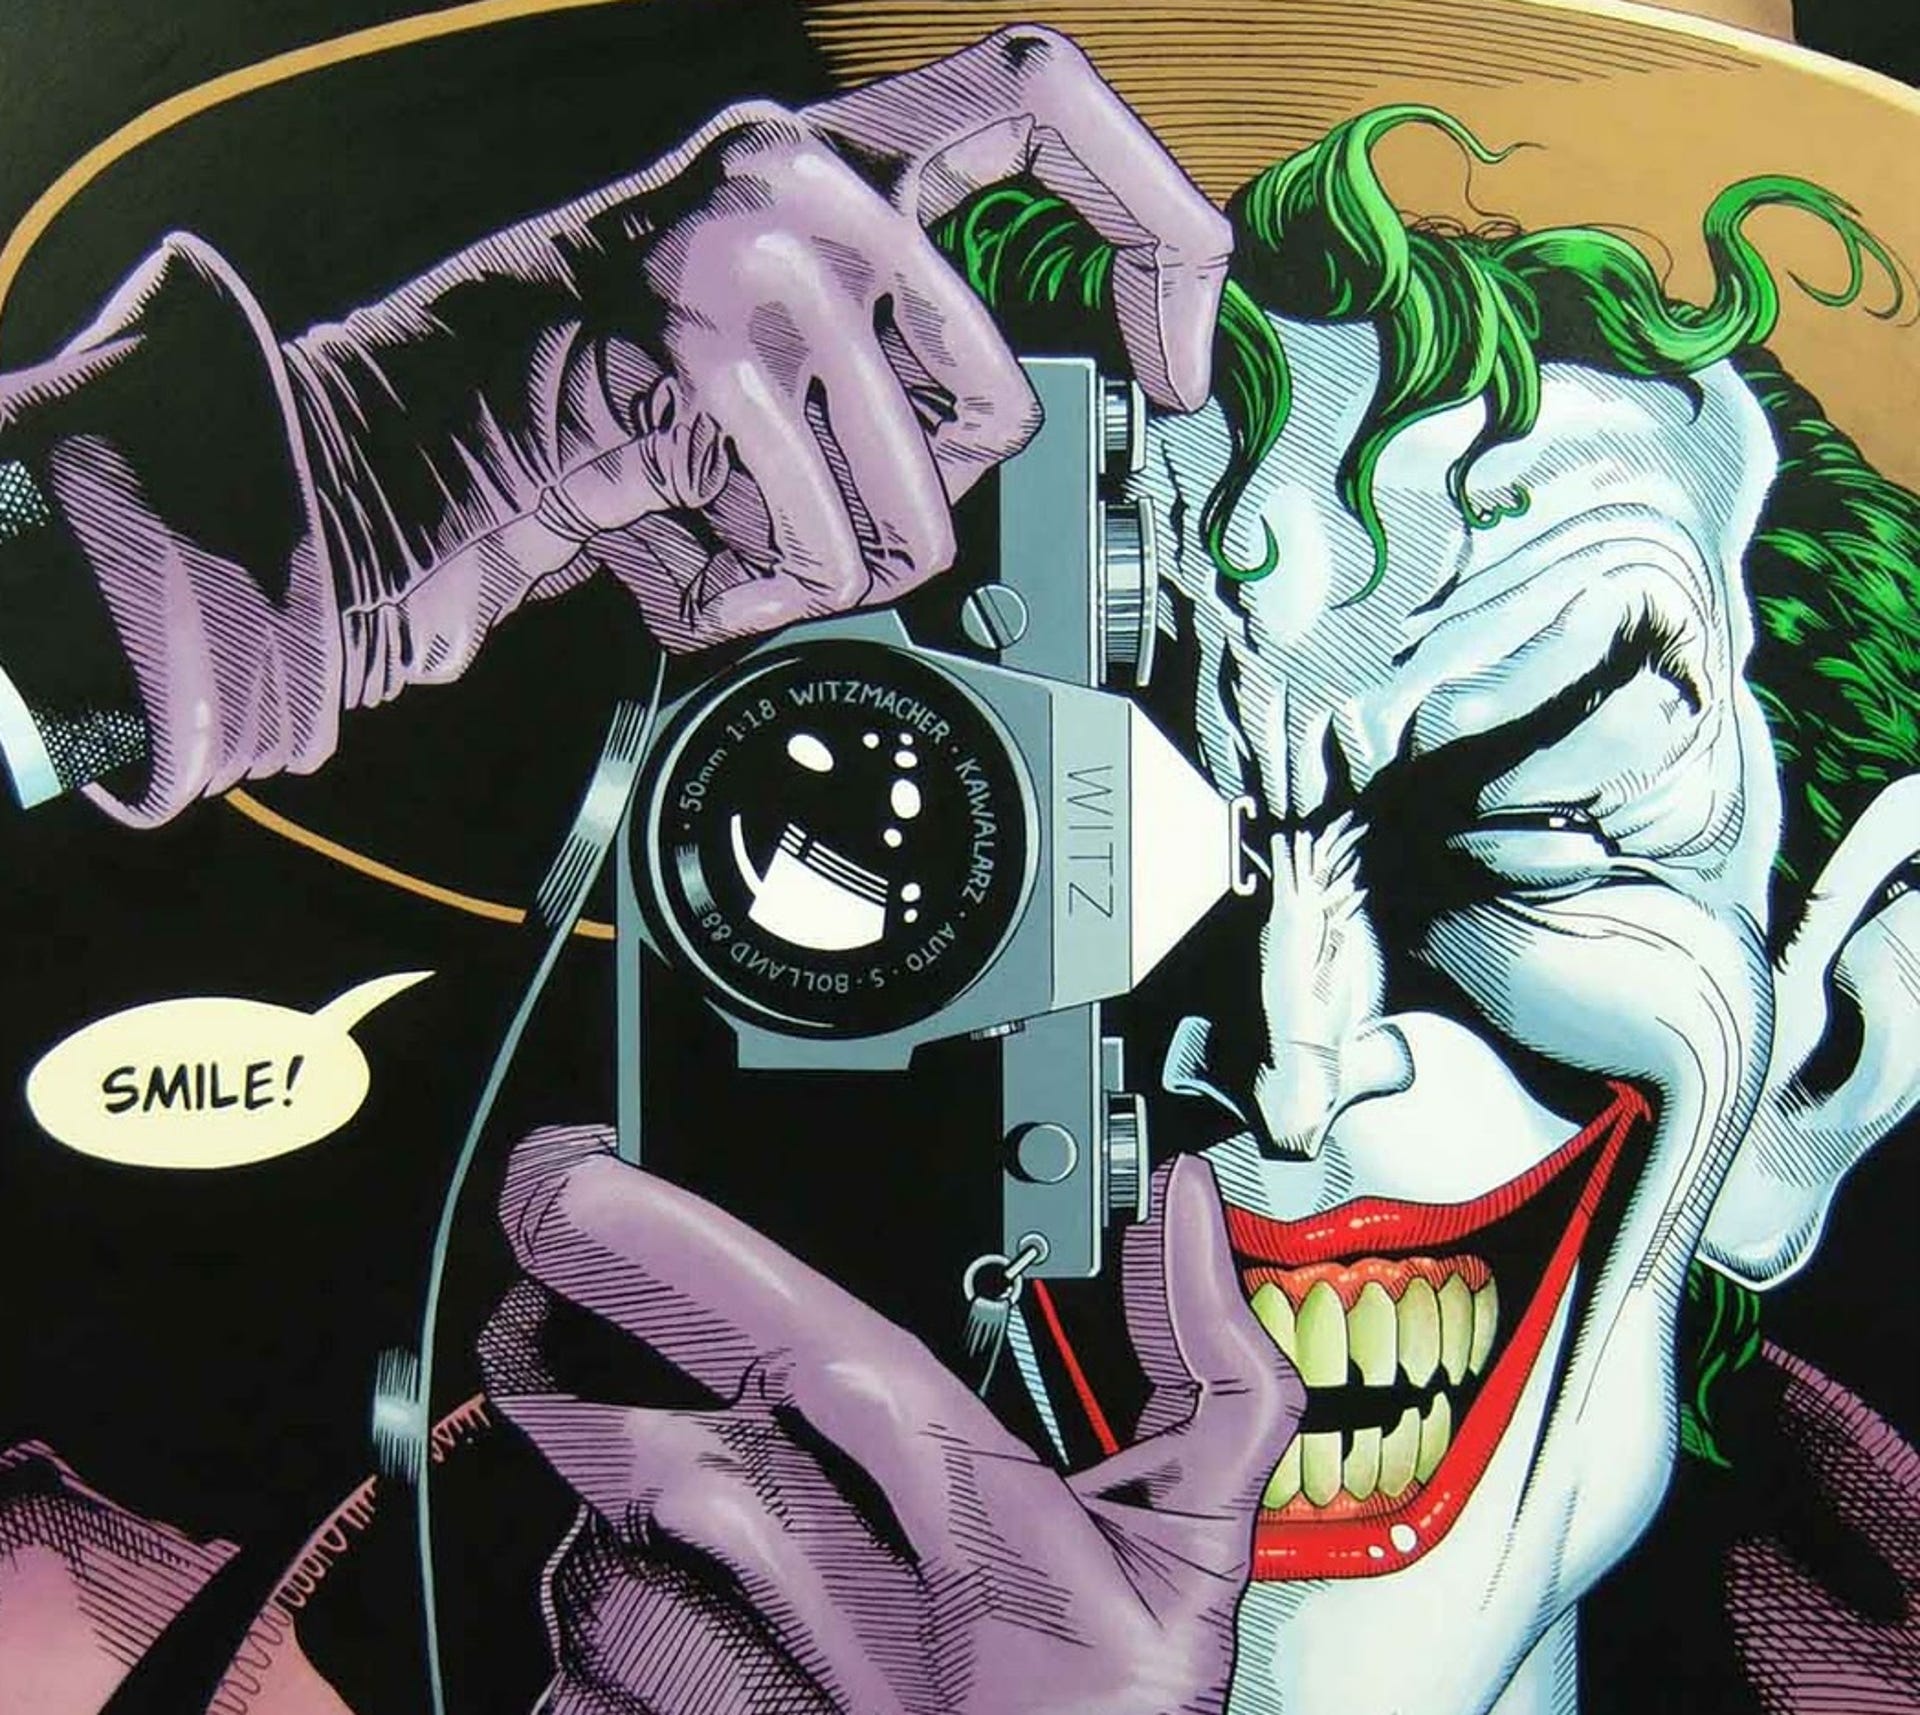 joker-batman-killing-joke-cover-bolland.jpg